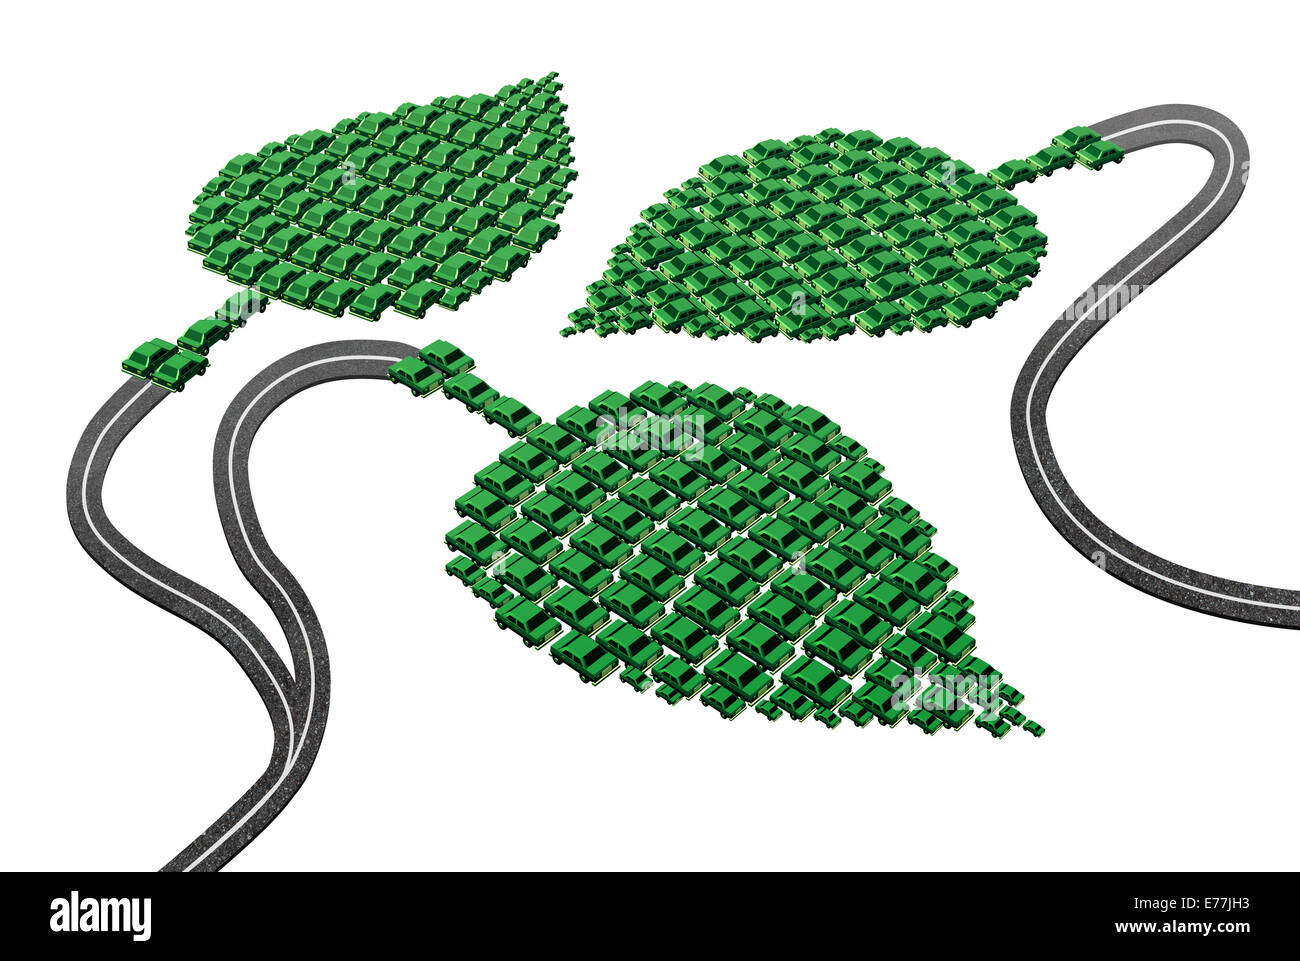 Transport Vert concept comme un groupe de wagons et les automobiles dans une forme de la feuille de route comme une métaphore de l'énergie électrique comme carburant de remplacement ou de biocarburant Hydrogène piles à combustible en tant que symbole de l'avenir de solution de transport respectueux de l'environnement Banque D'Images